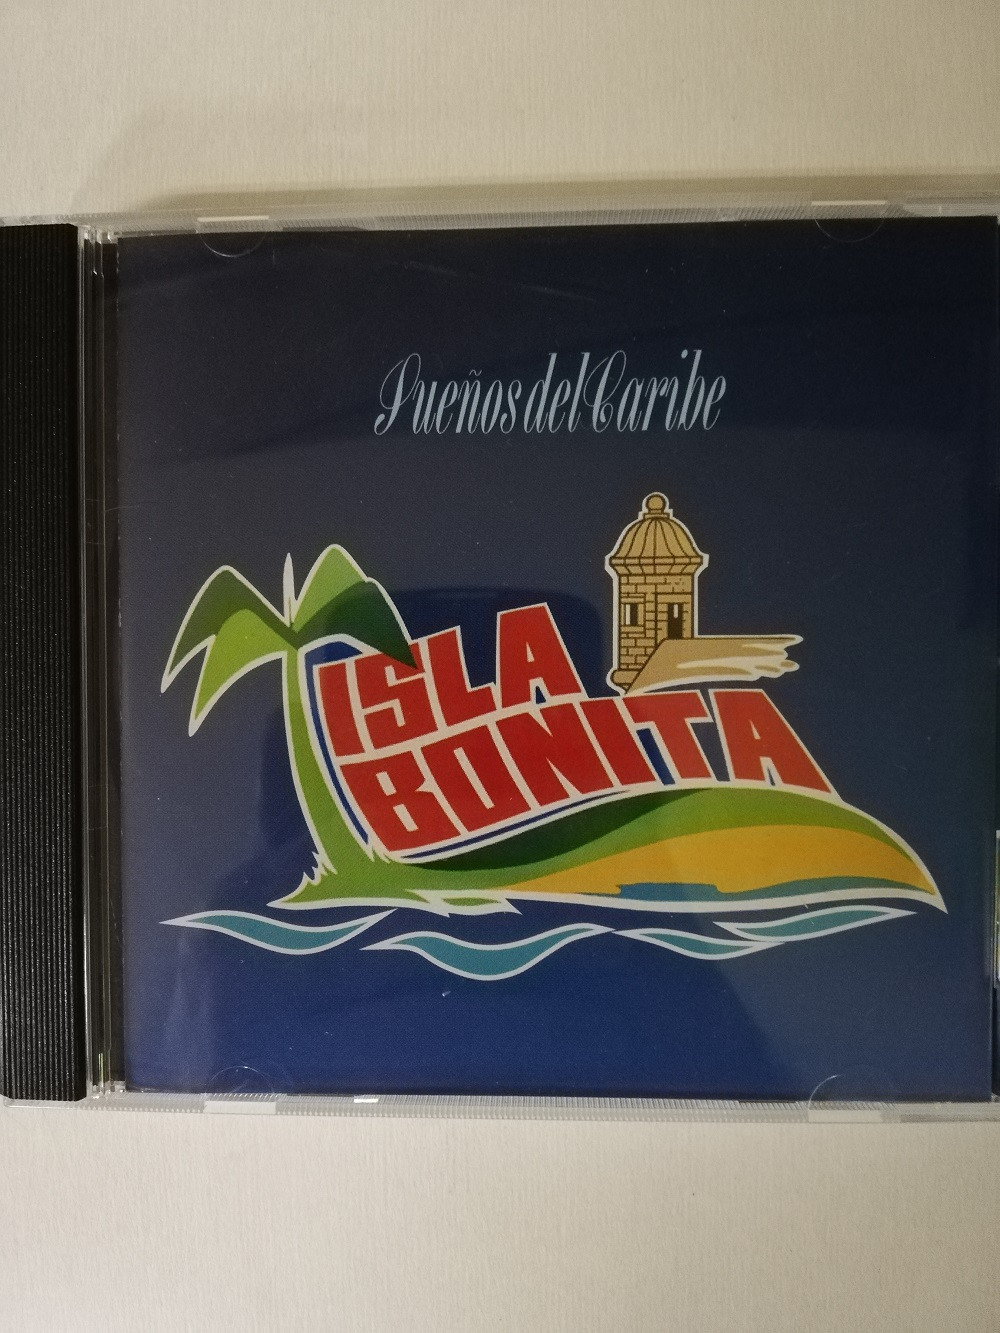 Imagen CD ISLA BONITA - SUEÑOS DEL CARIBE